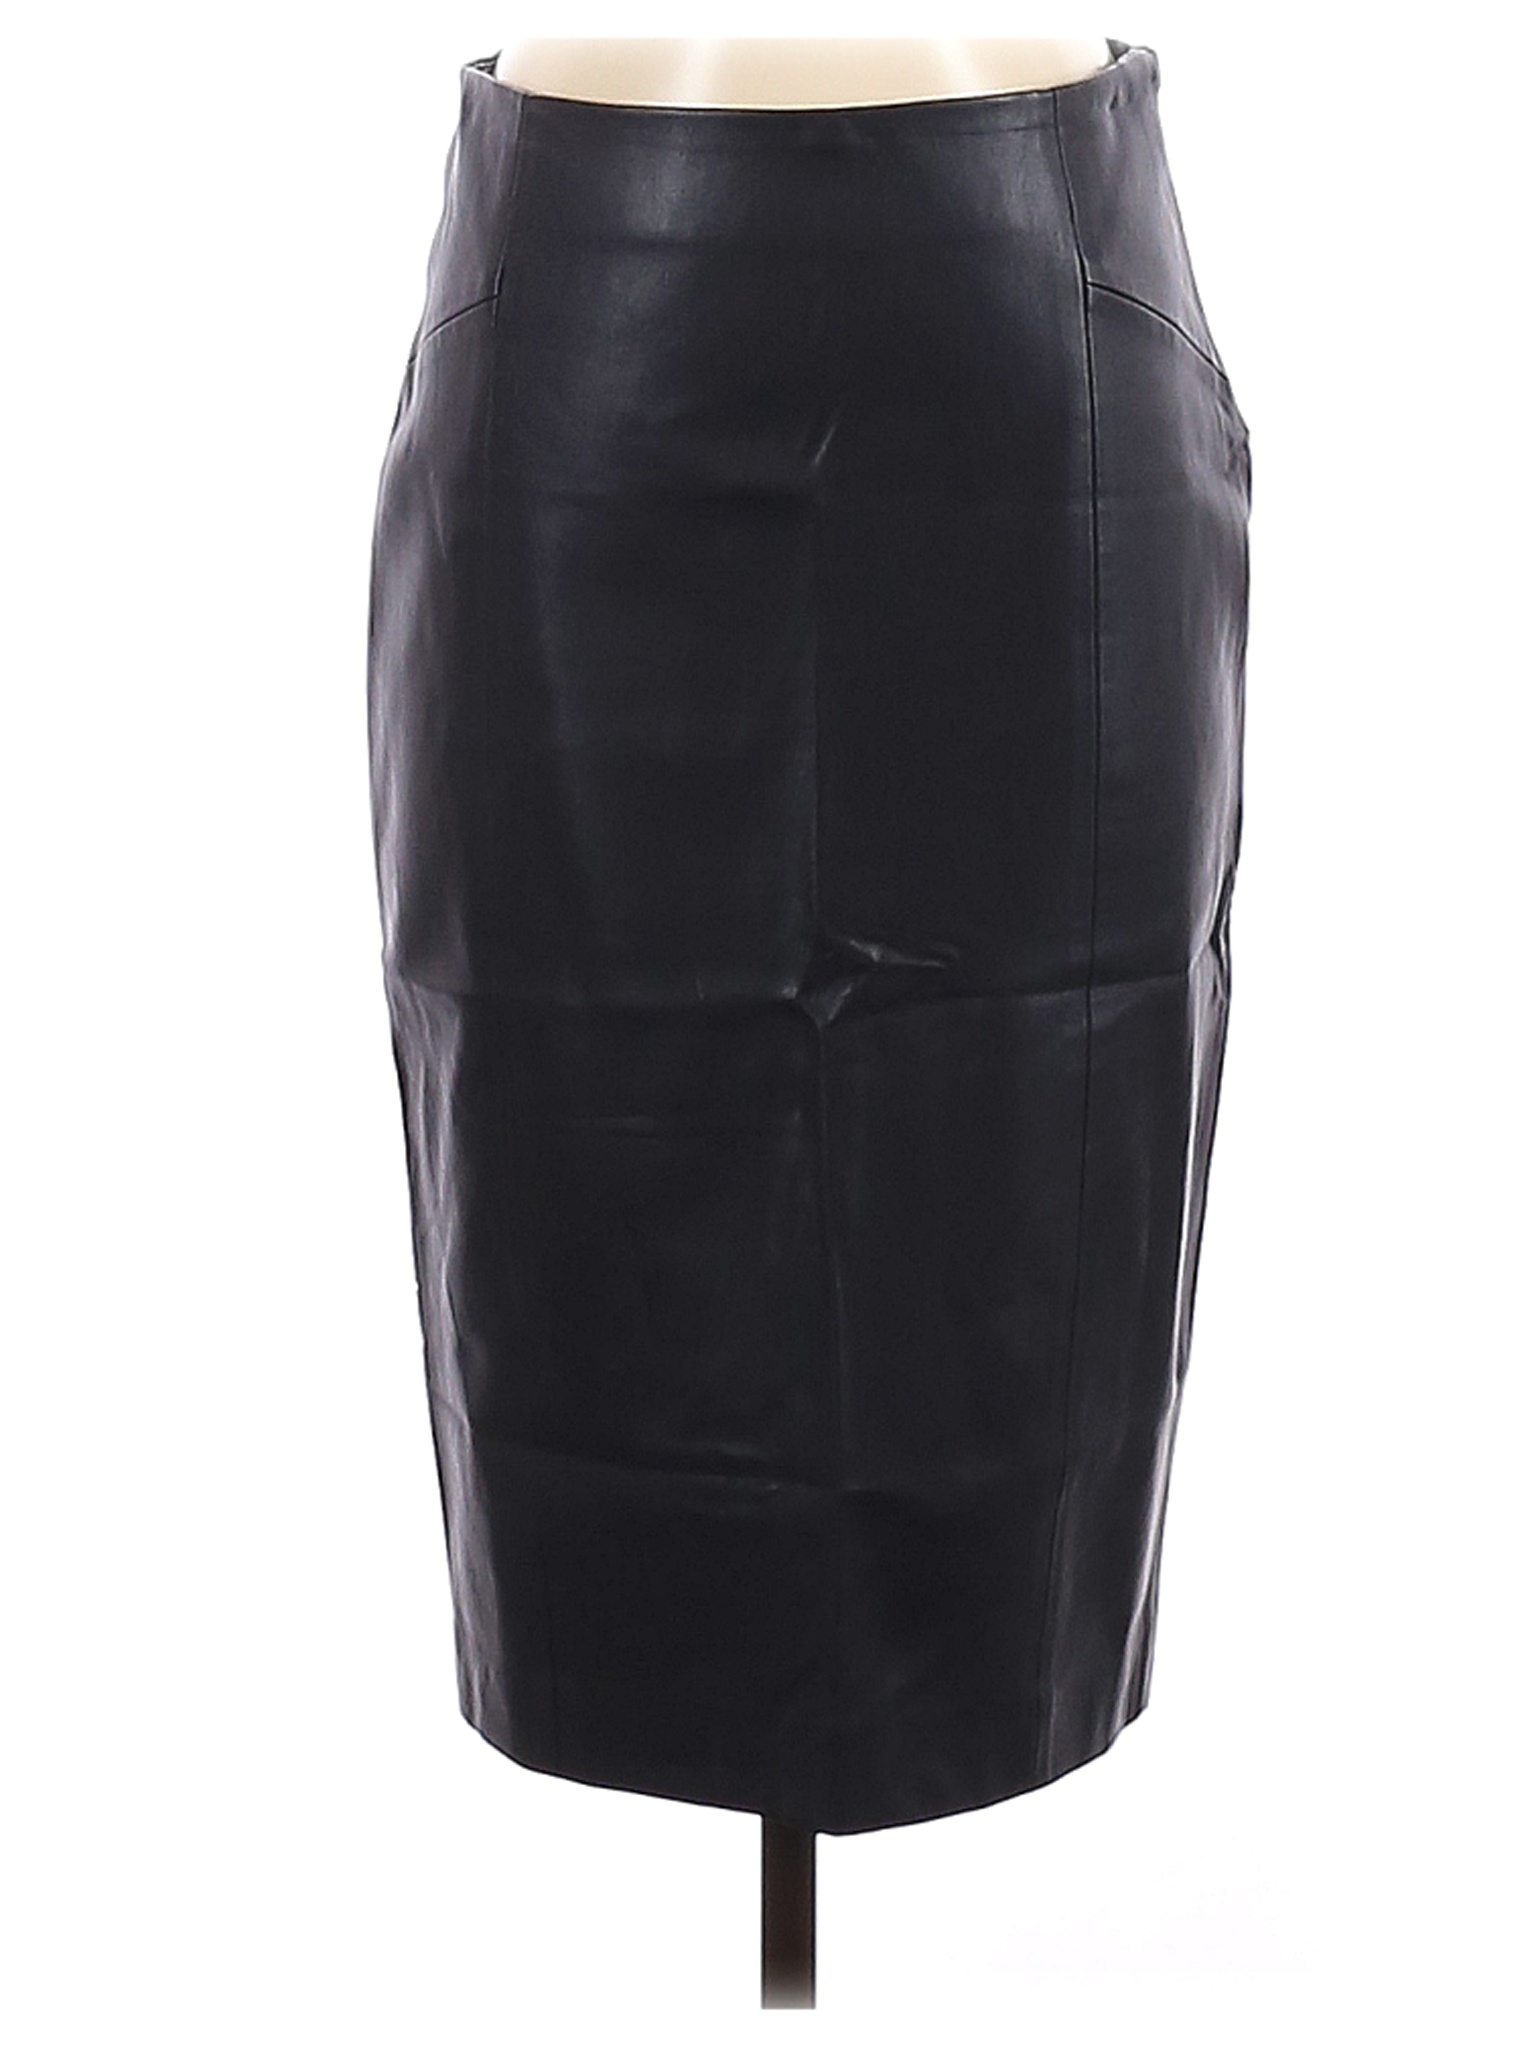 Zara Basic Women Black Faux Leather Skirt S | eBay